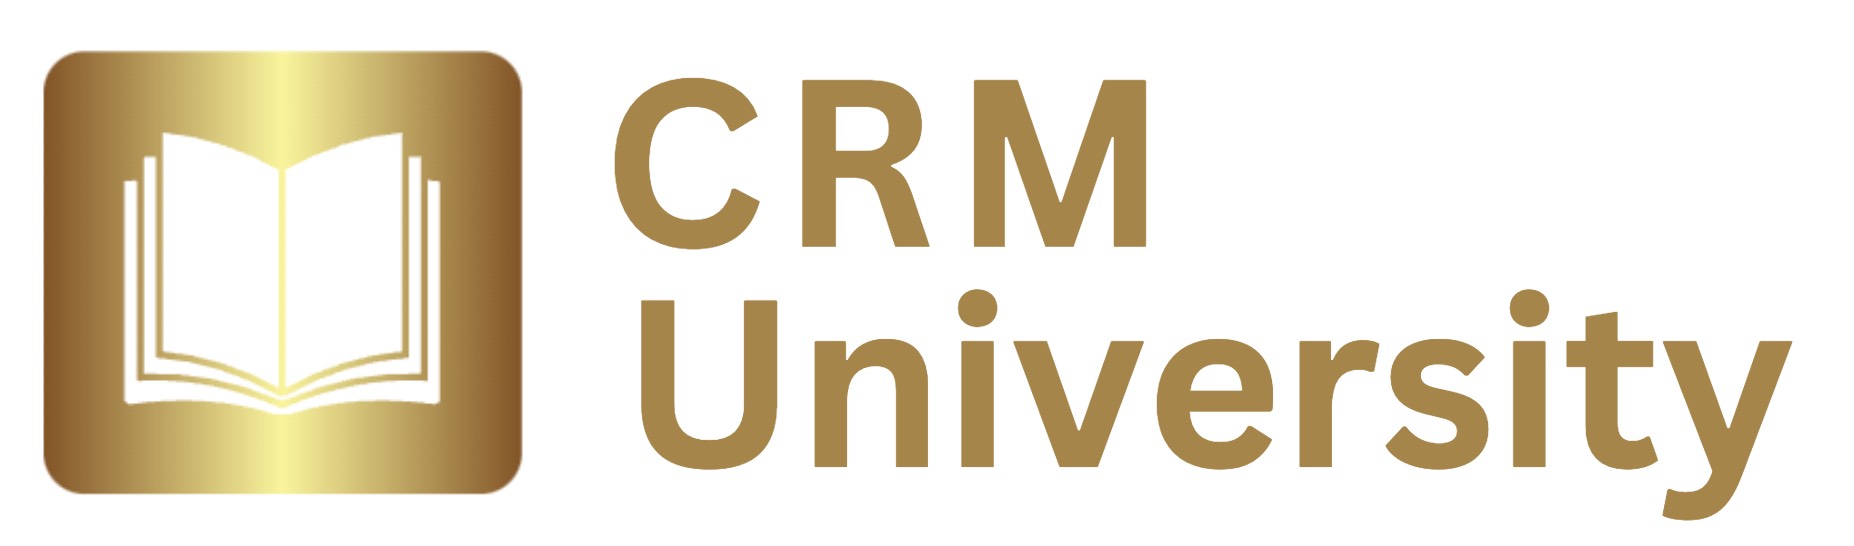 微软CRM－如何 怎么 怎样 零基础 在线 学习 学 编程 IT 程序员 微软 CRM 软件开发 小程序开发 程序开发 班 教学 培训 机构 学校 网络 课程 培训班 网课 网站 入门 教程